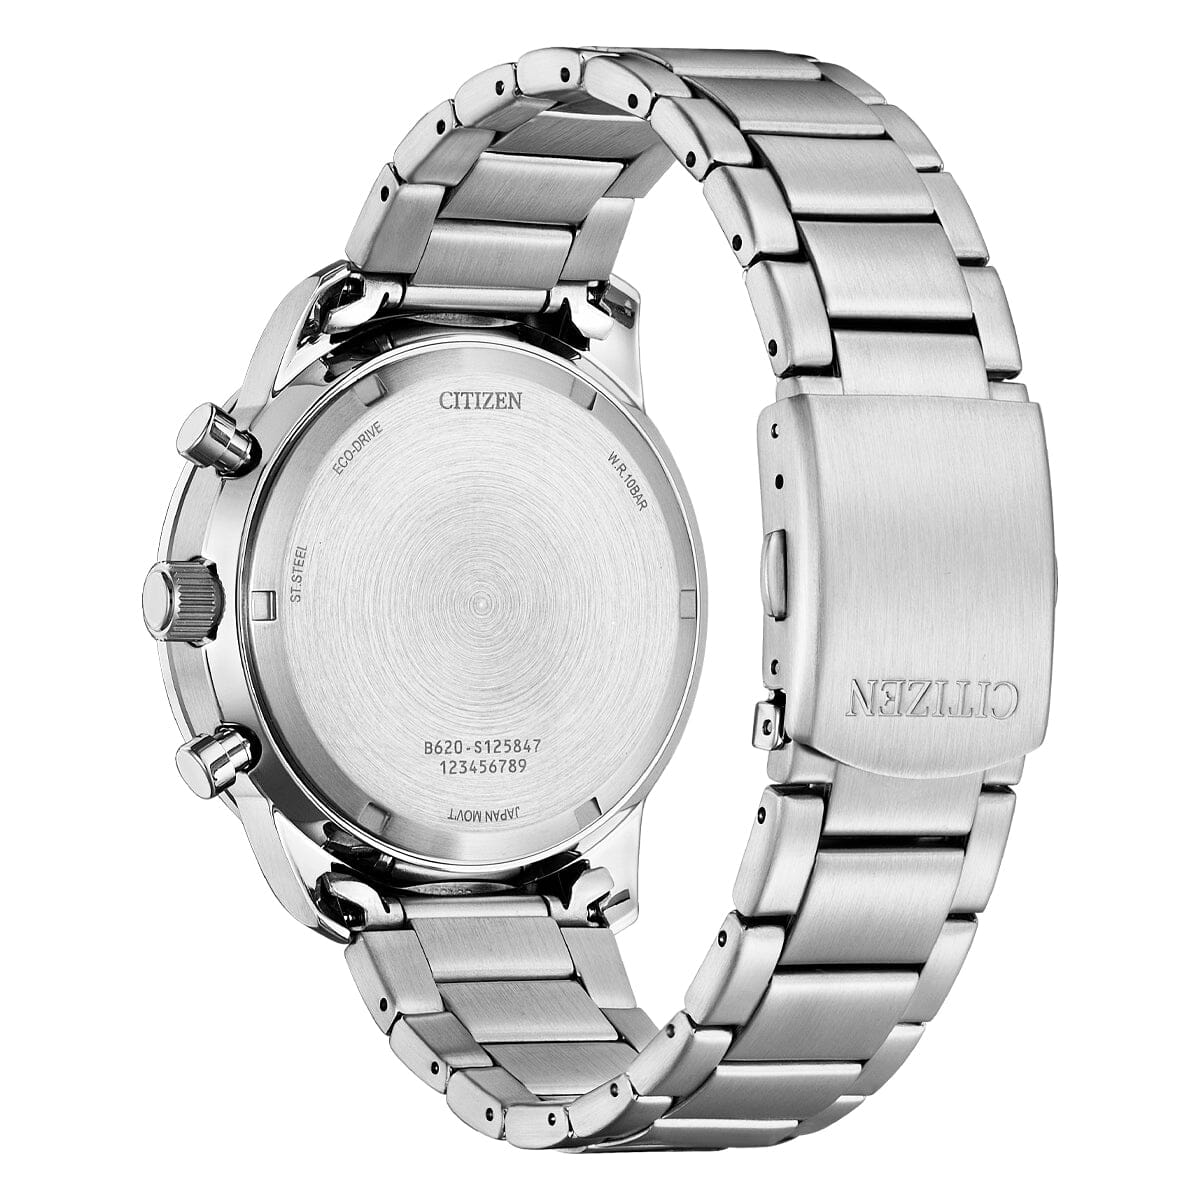 Citizen Men's Eco-Drive Chronoghraph Watch CA4500-91E Watches Citizen 